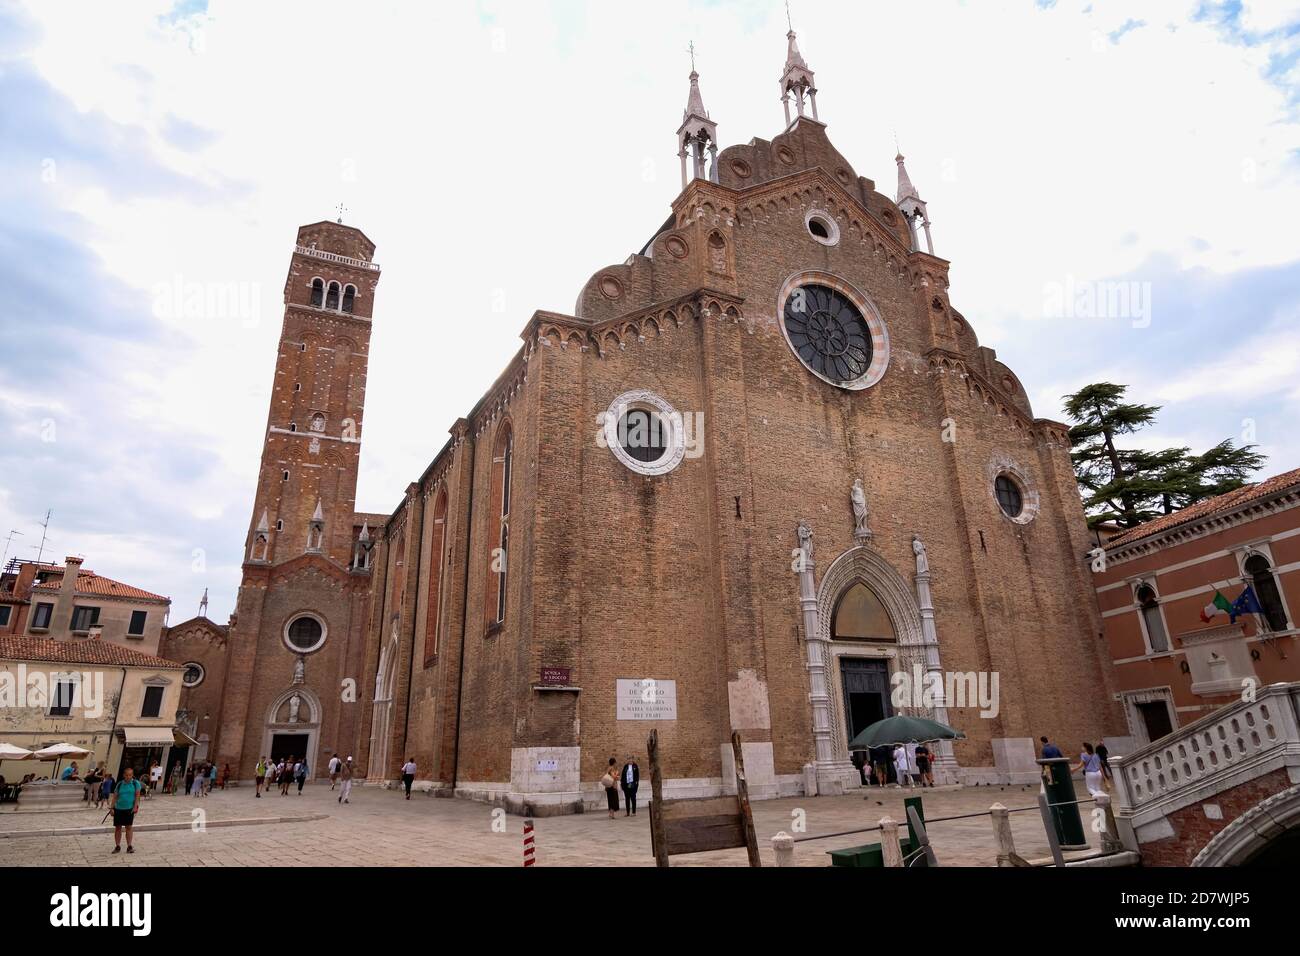 Basilica di Santa Maria gloriosa dei Frari - enorme gotico veneziano Chiesa Francescana di mattoni rossi Foto Stock